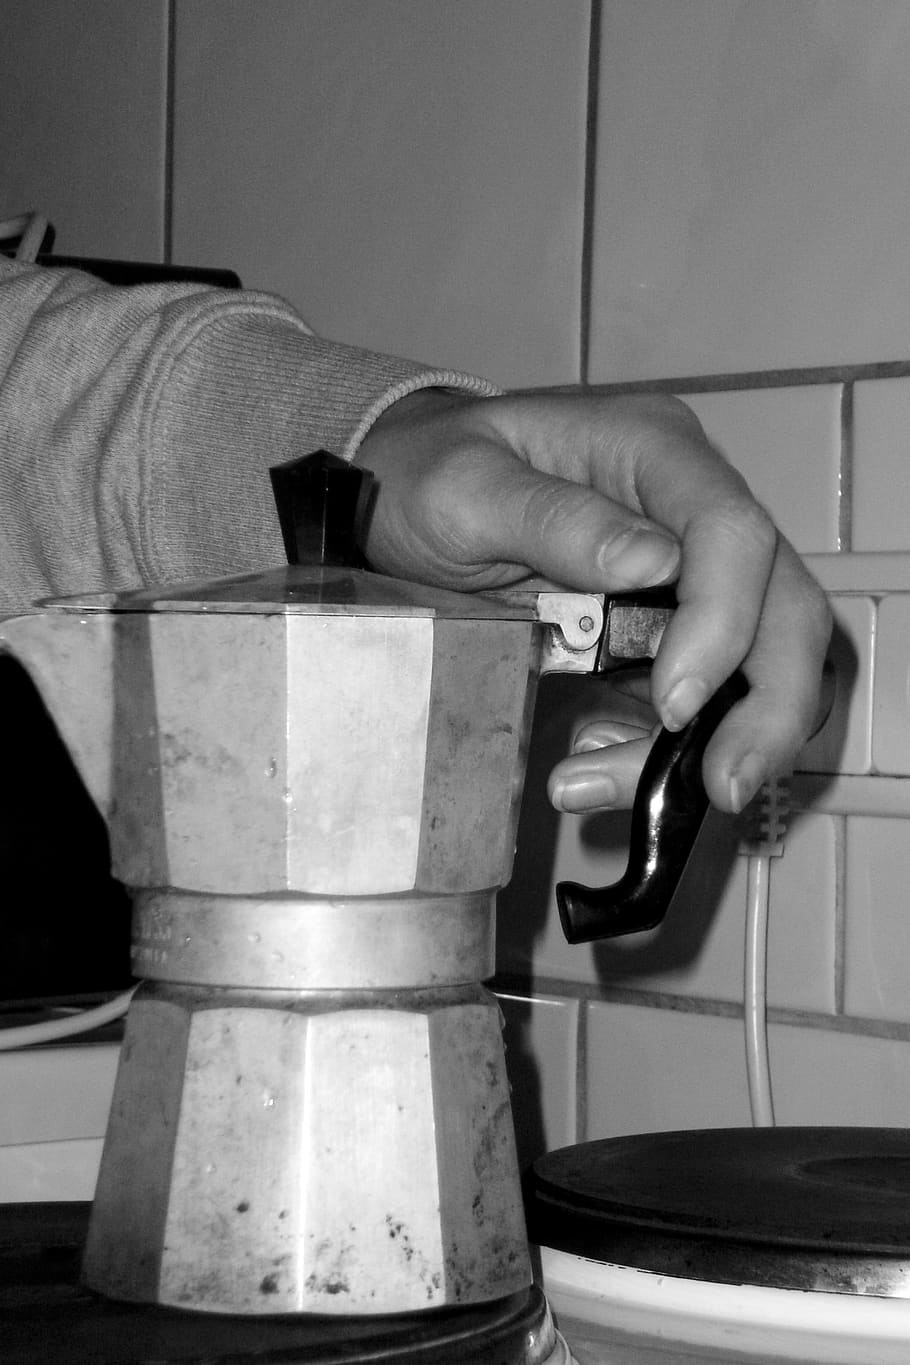 café, italiano, fogão, espresso metálico, mão humana, uma pessoa, pessoas reais, mão, dentro de casa, exploração